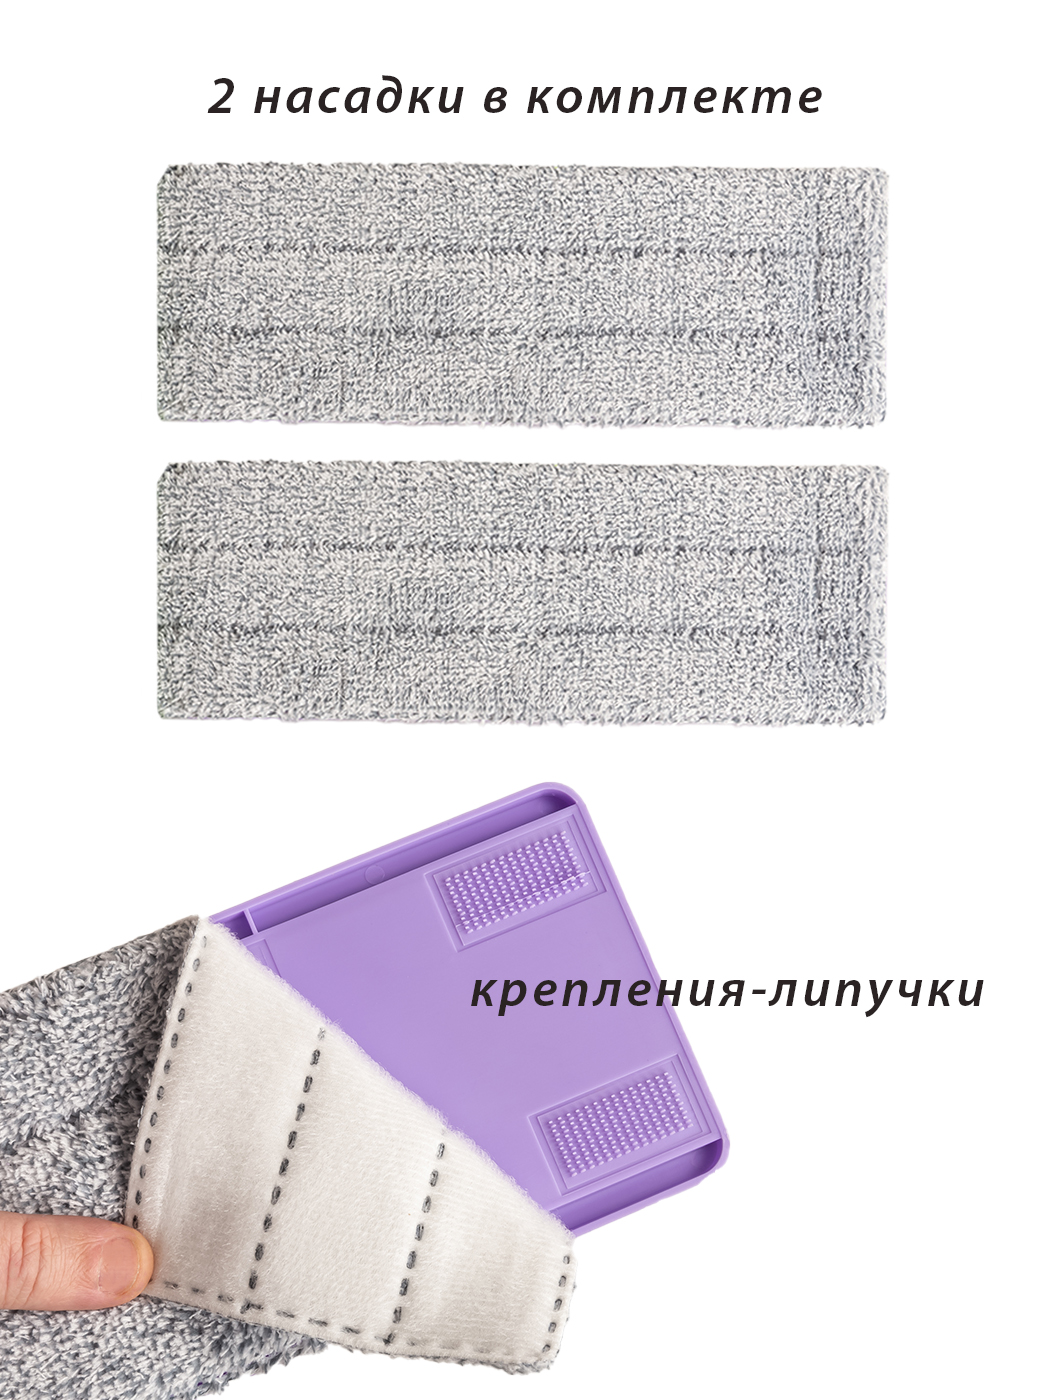 Картинка Умная швабра для сухой и влажной уборки Orion 1104 по разумной цене купить в интернет магазине mall.su